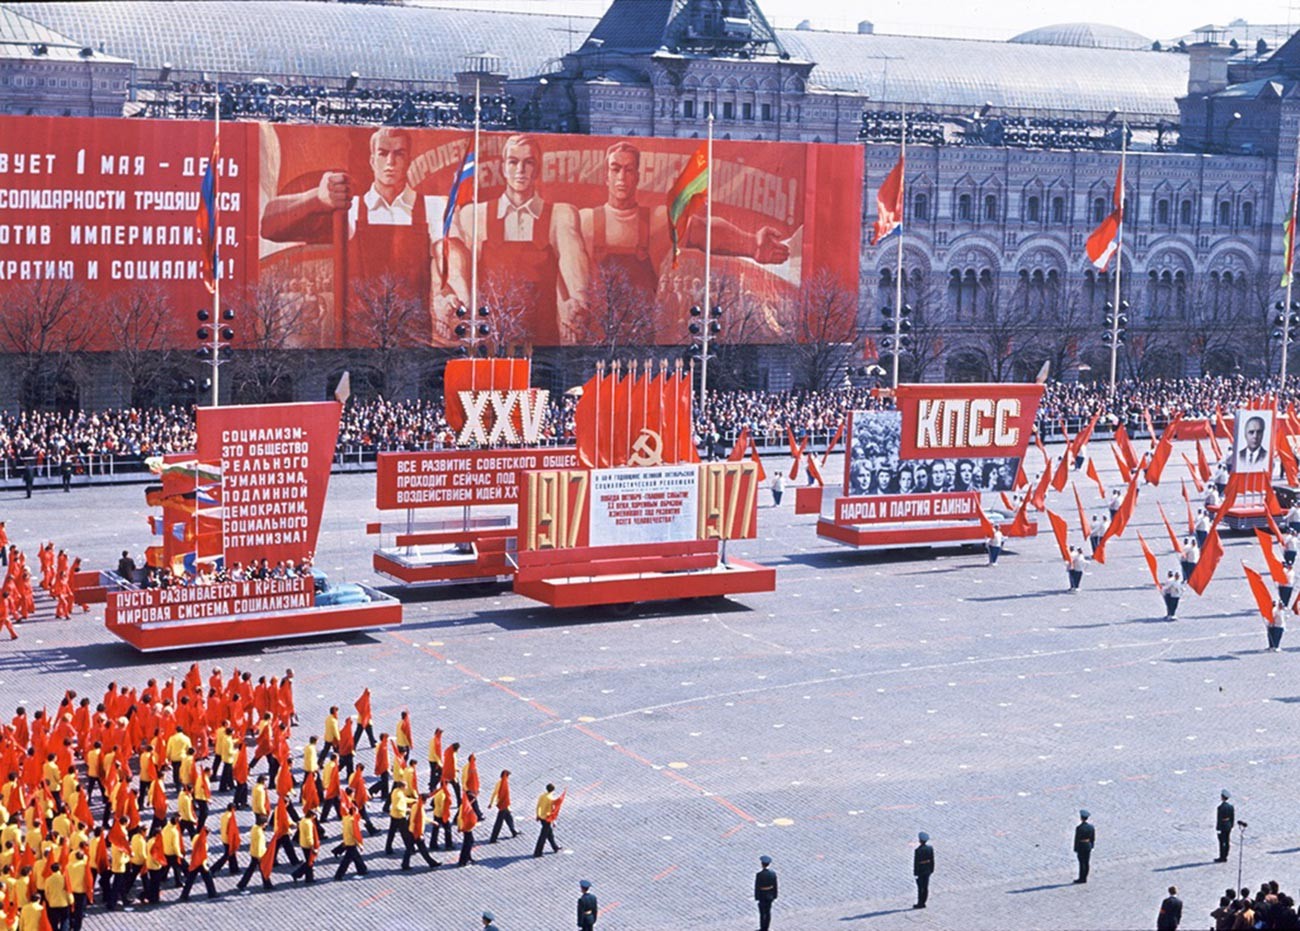 Парад на красной площади в ссср